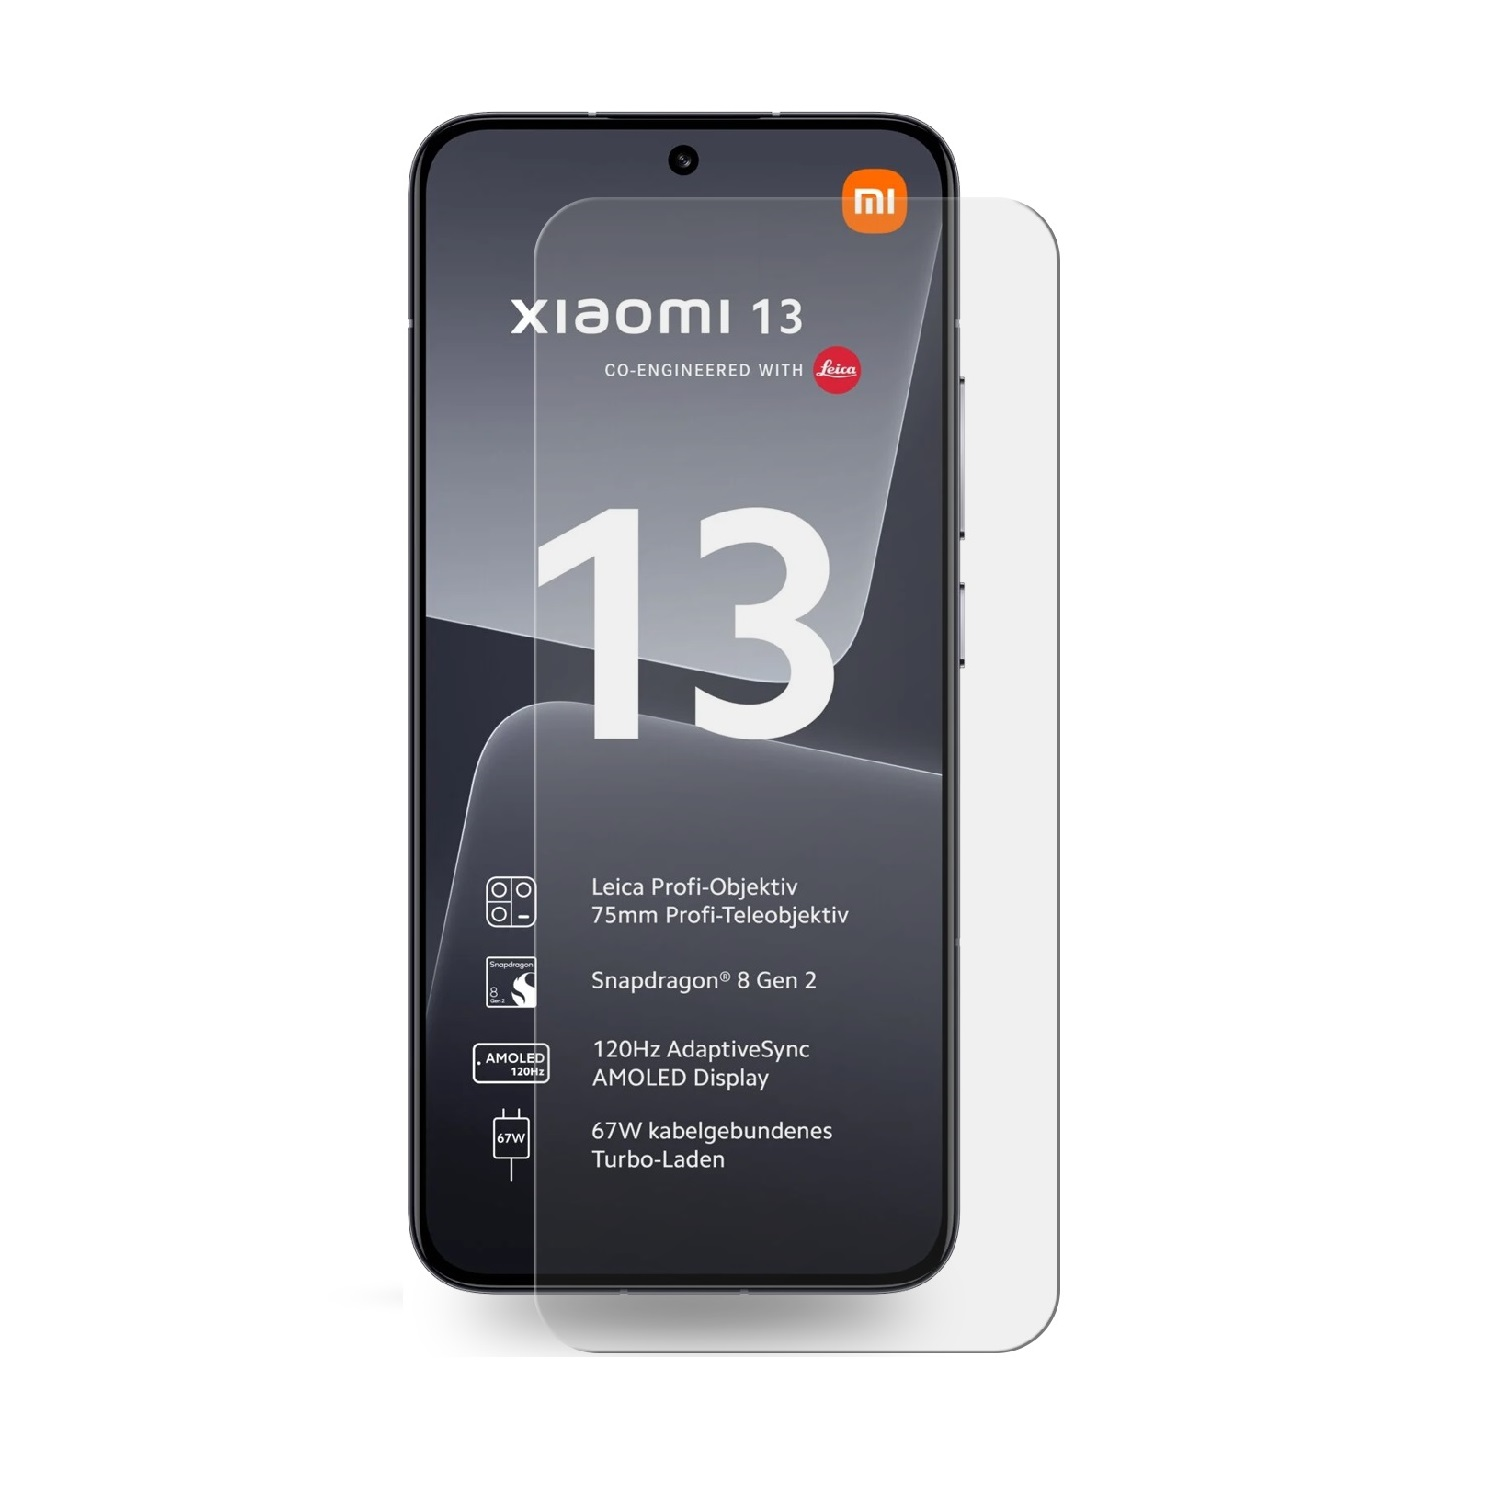 Xiaomi Displayschutzfolie(für 6x KLAR PROTECTORKING 13) ANTI-SHOCK Panzerfolie HD